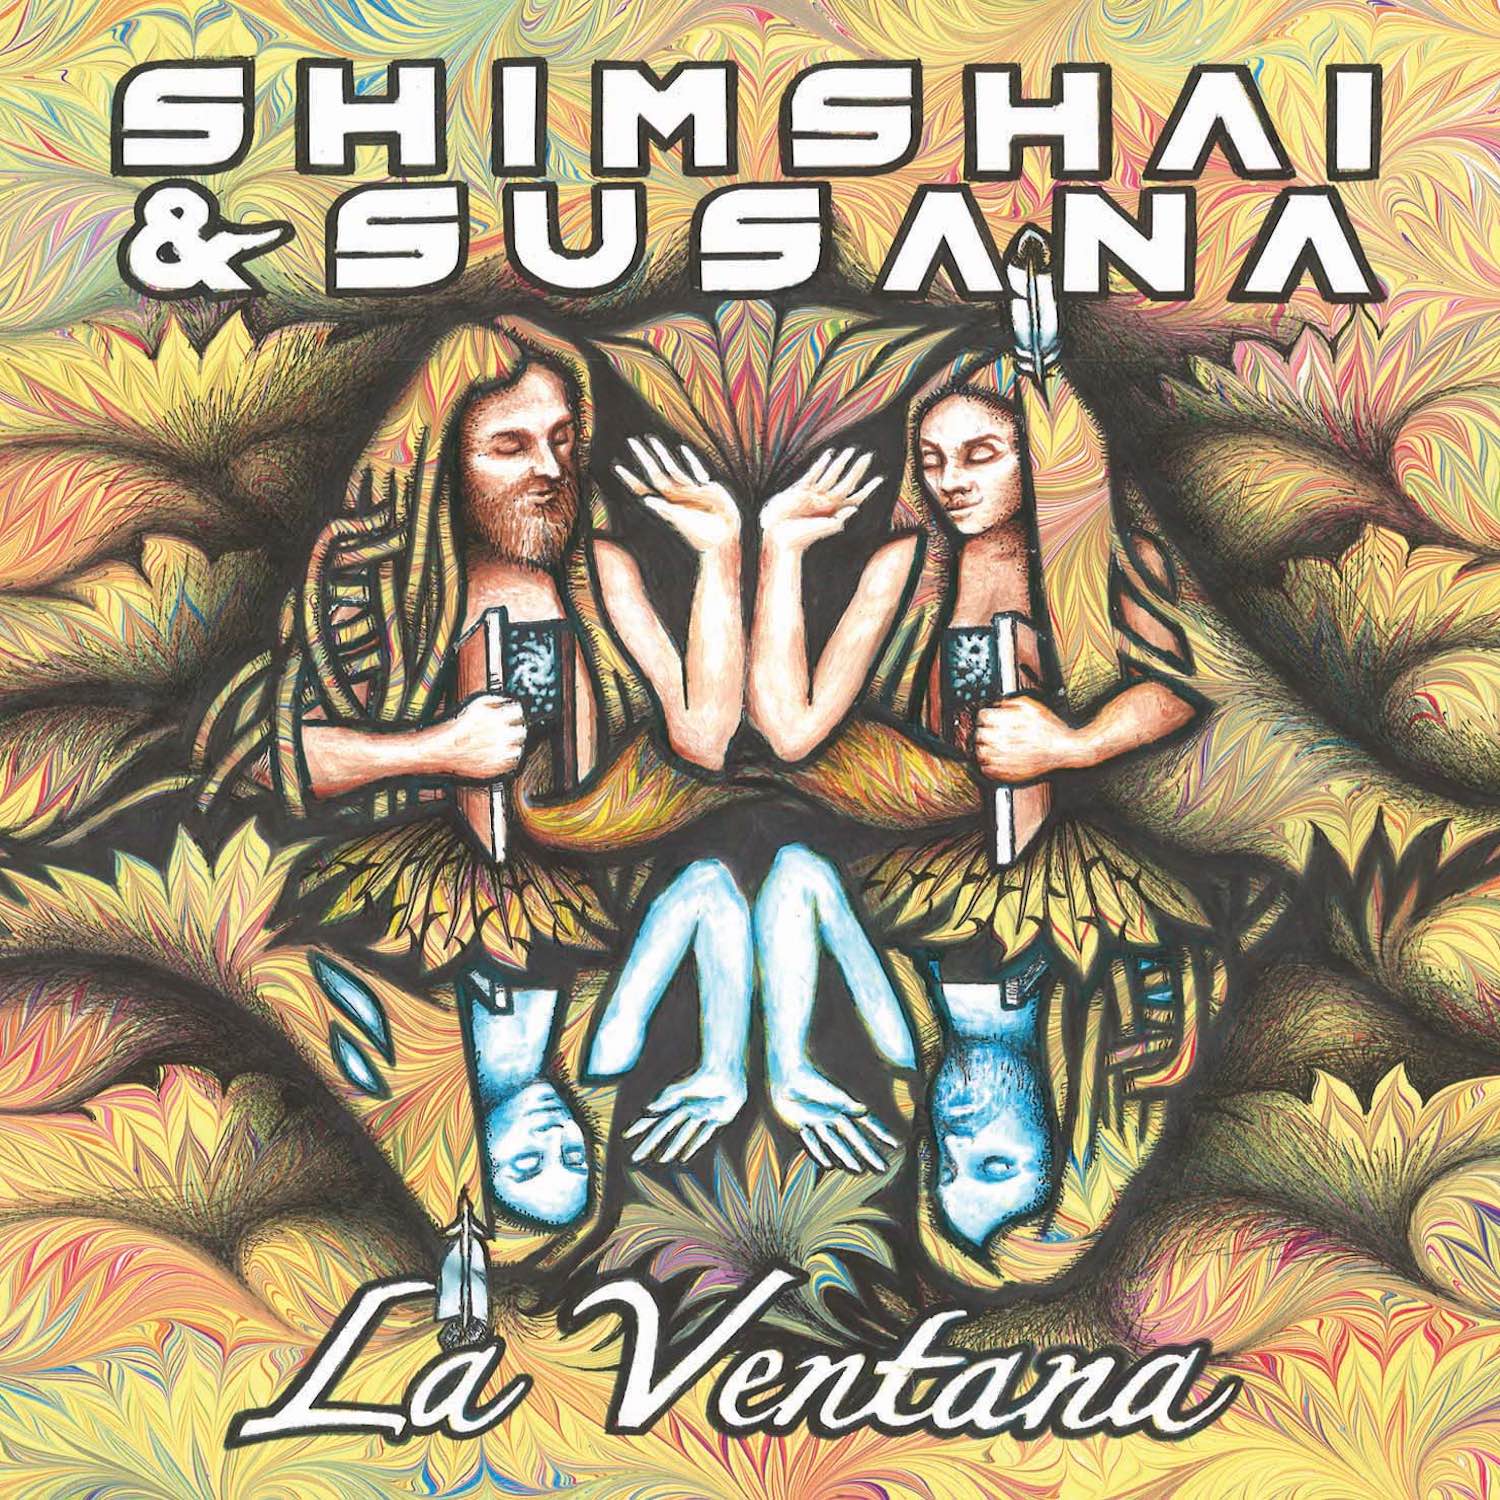 Promesa by Shimshai from the Album La Ventana by Shimshai & Susana